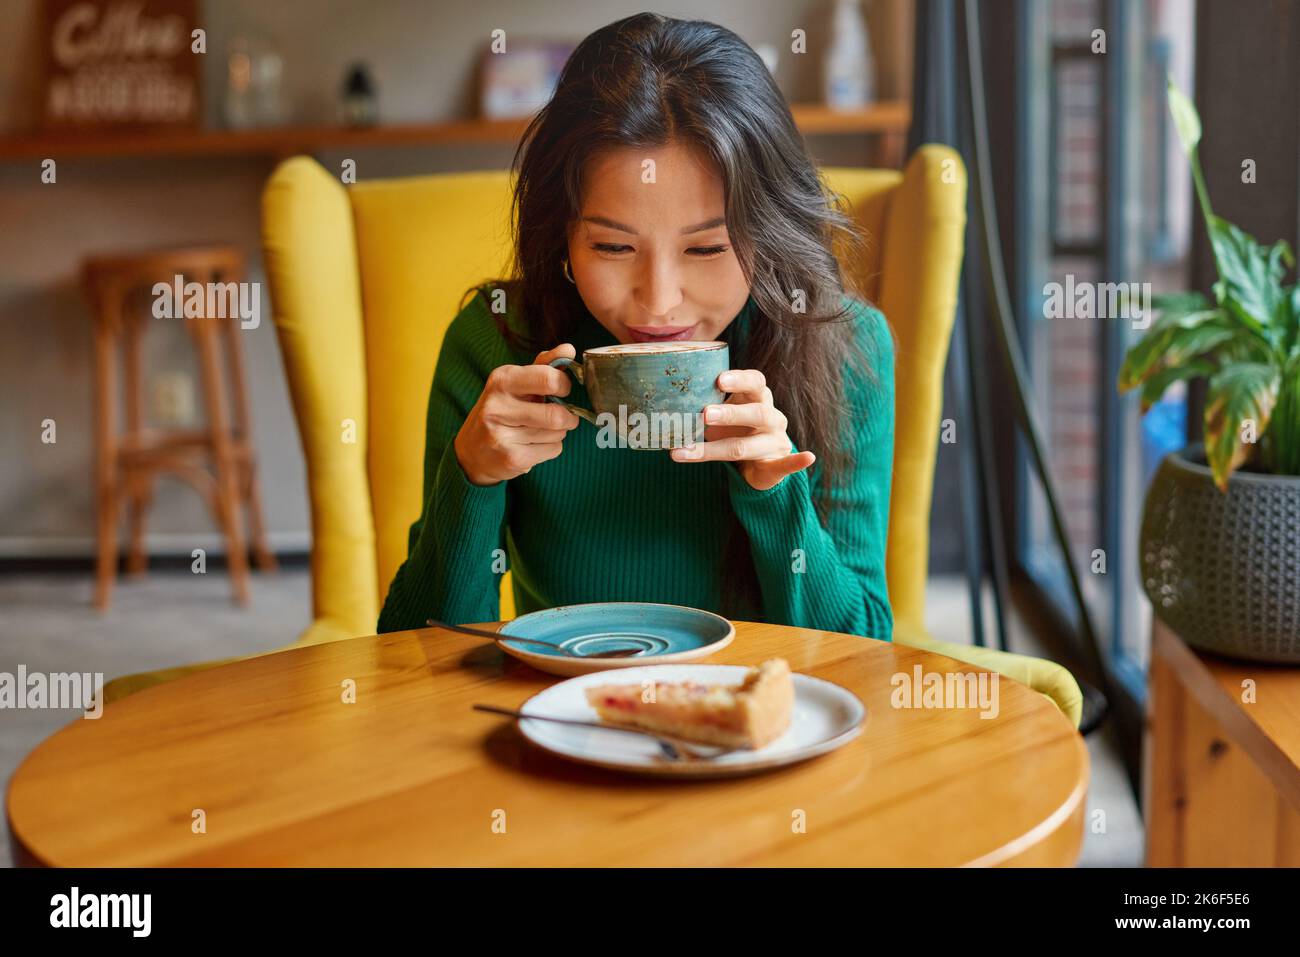 Ritratto di giovane asiatico affascinante, attraente brunetta kazako donna bere caffè caldo con torta di mele a tavola, seduta in accogliente sedia gialla in caffè. Foto Stock